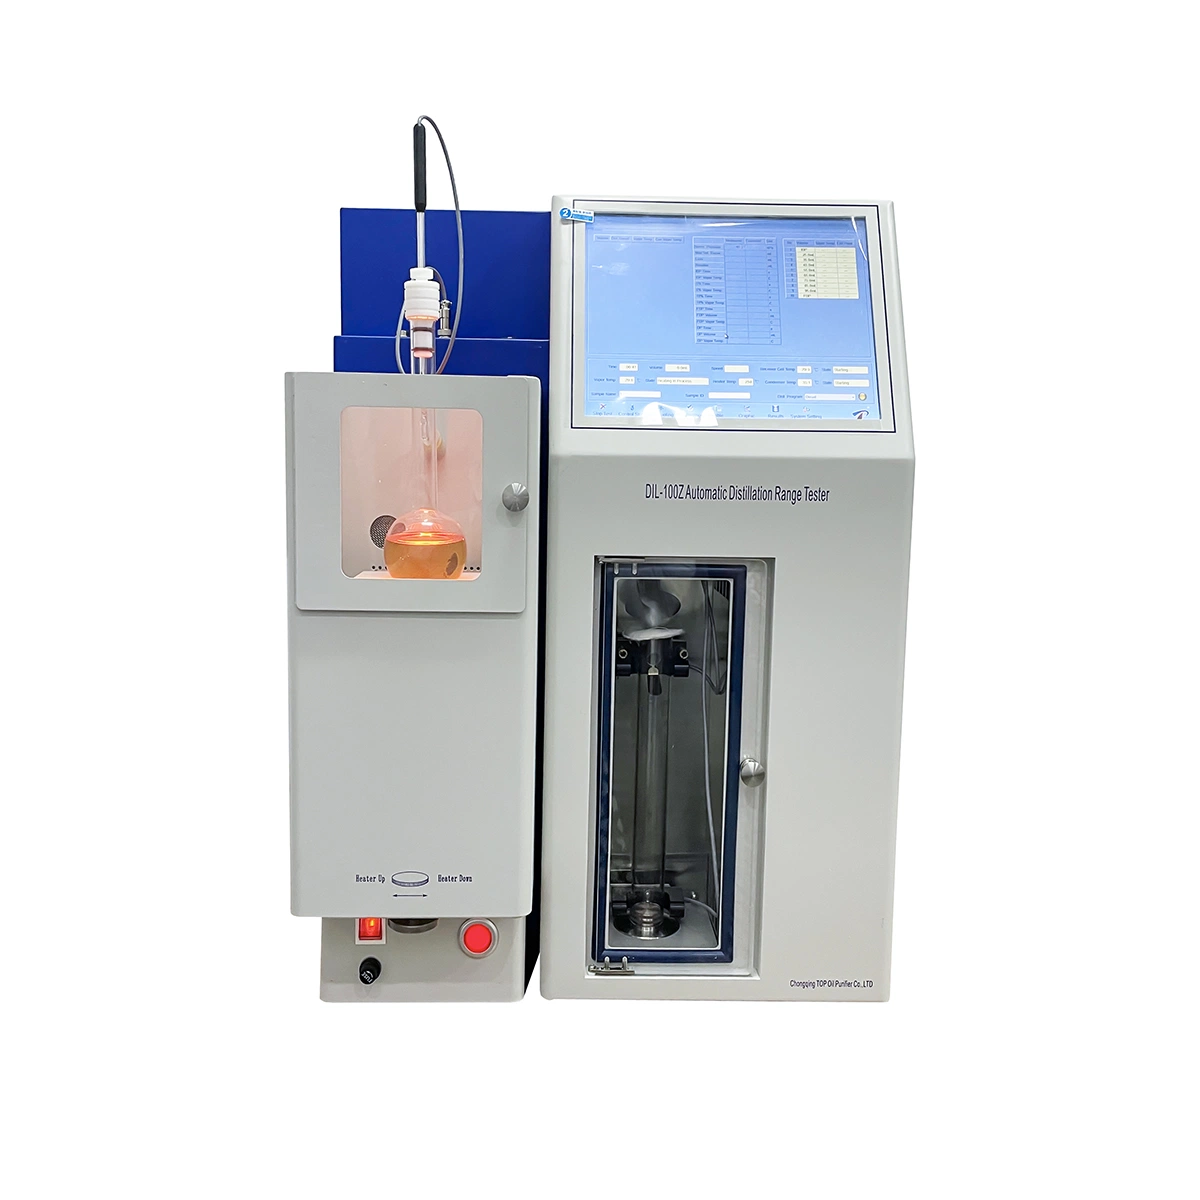 Gasoline Distillation Range Testing Equipment